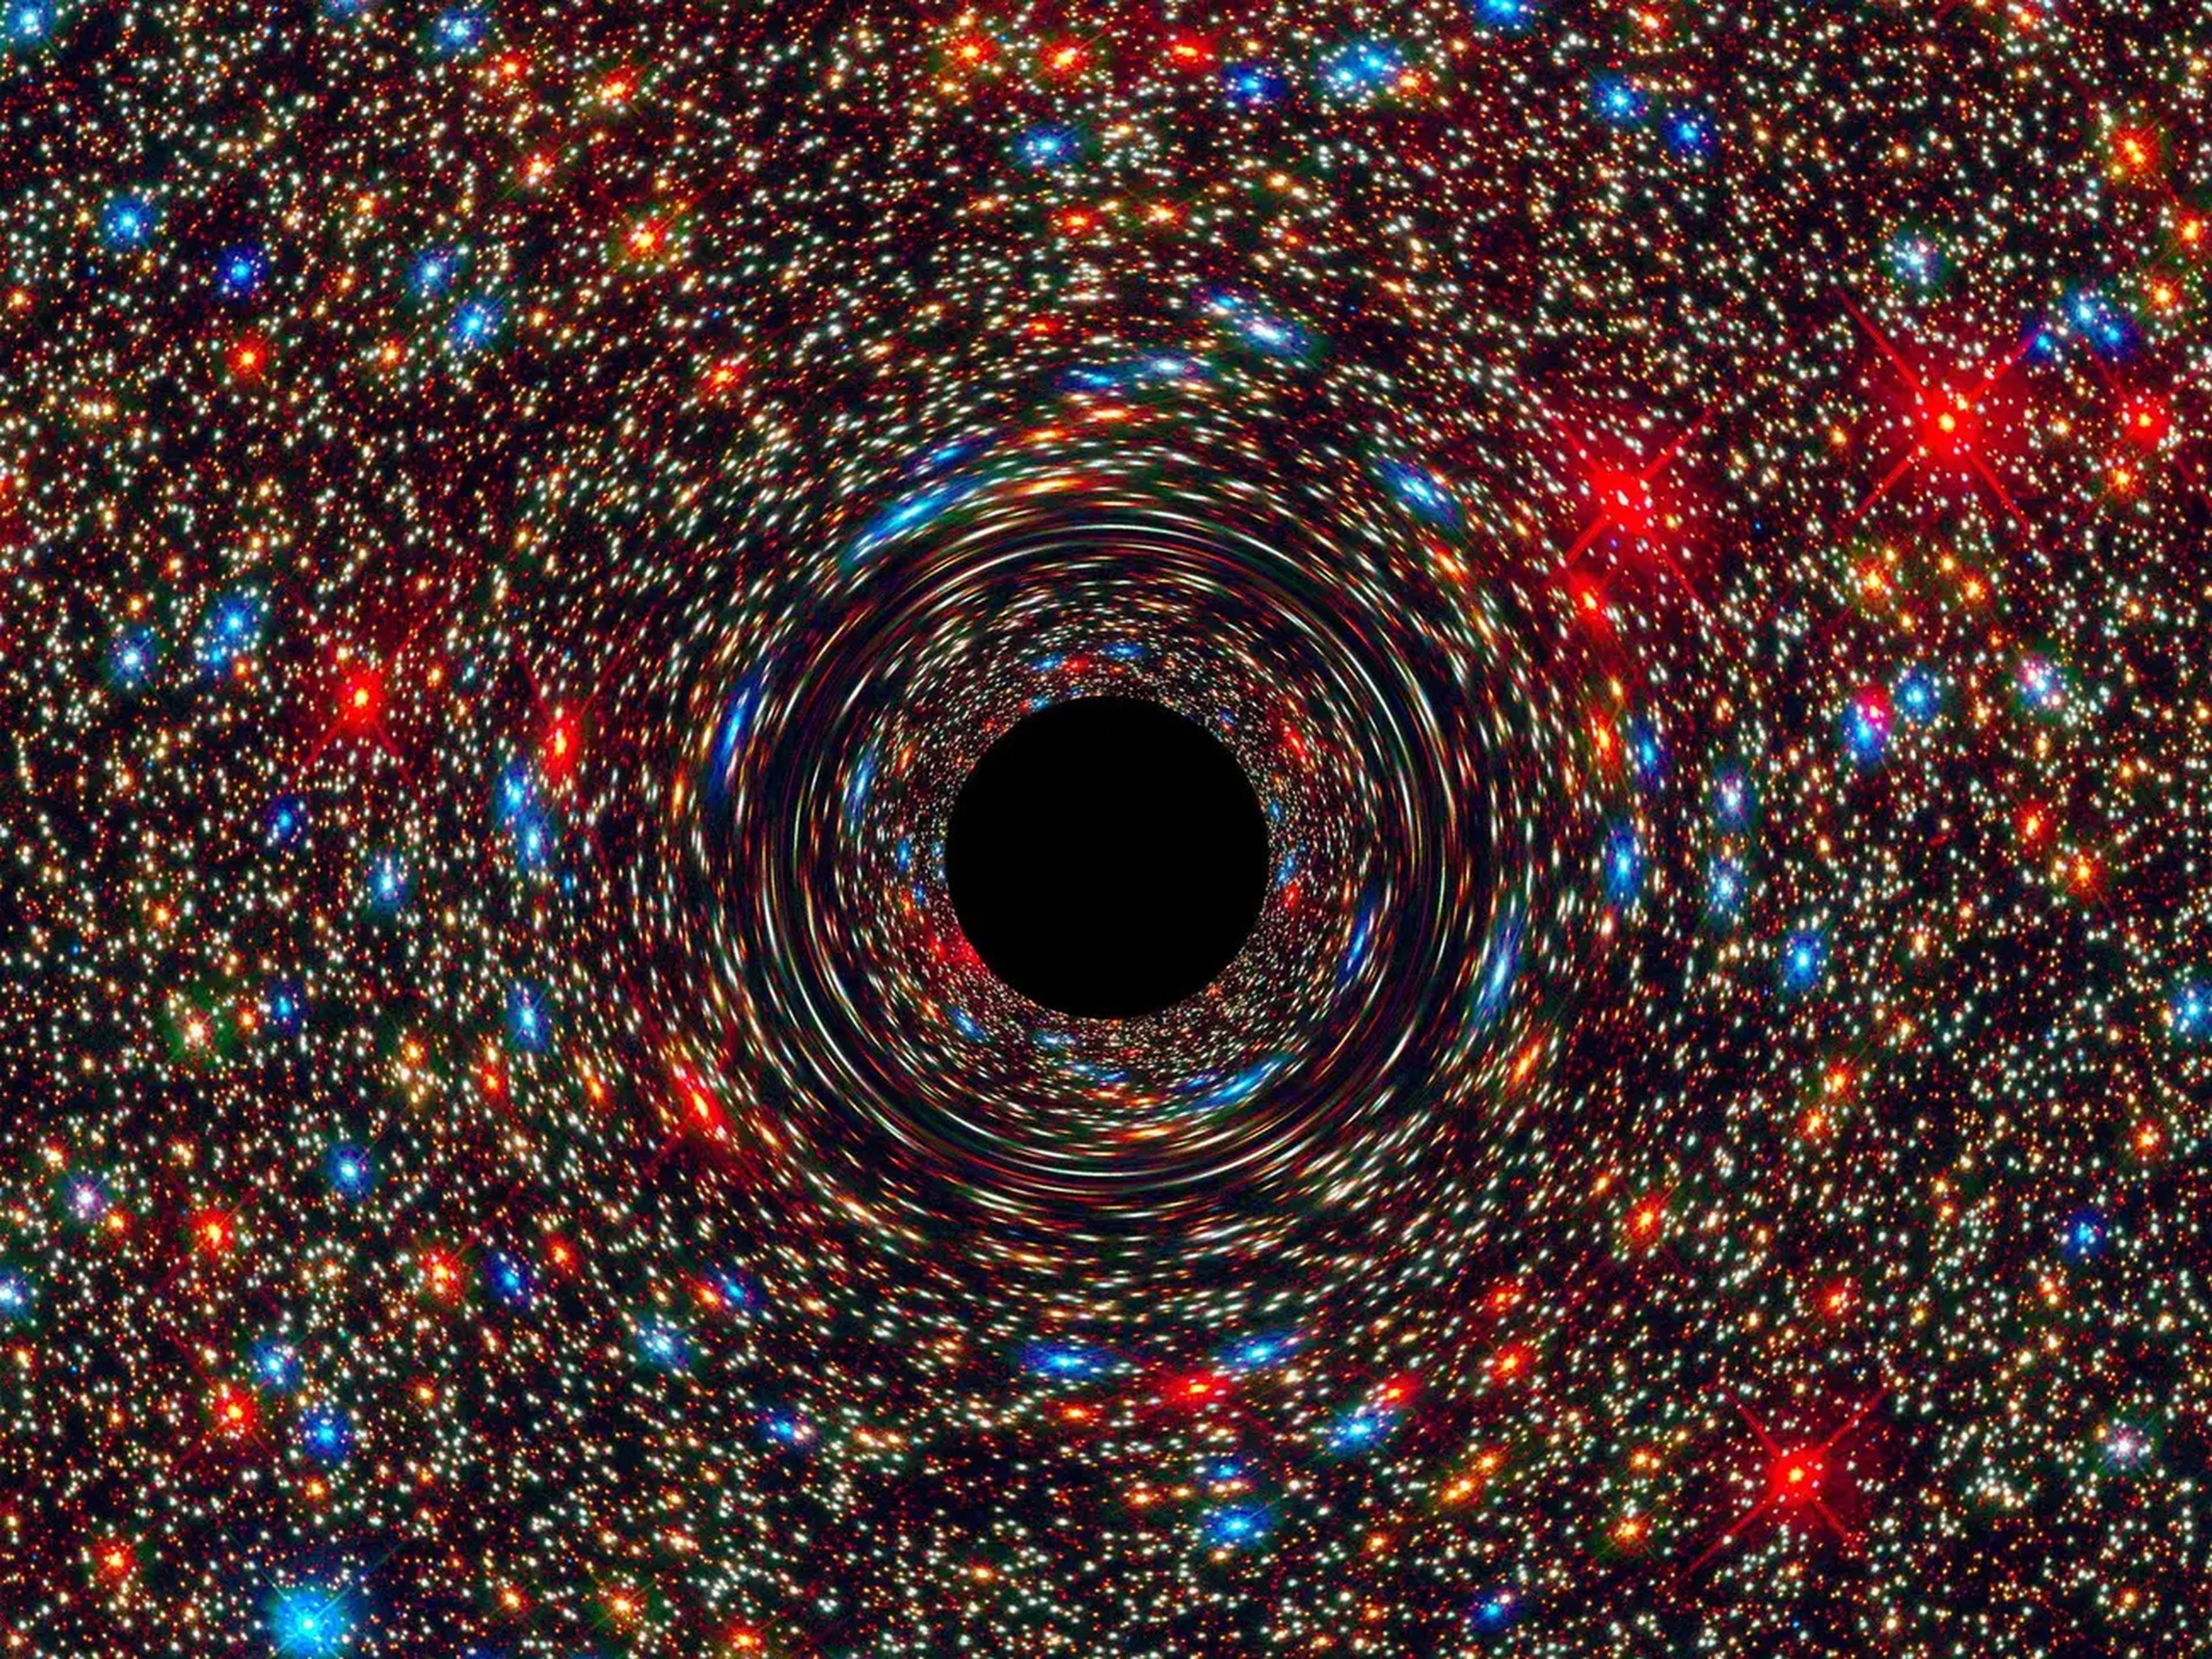 Esta imagen simulada muestra un agujero negro supermasivo en el centro de una galaxia.